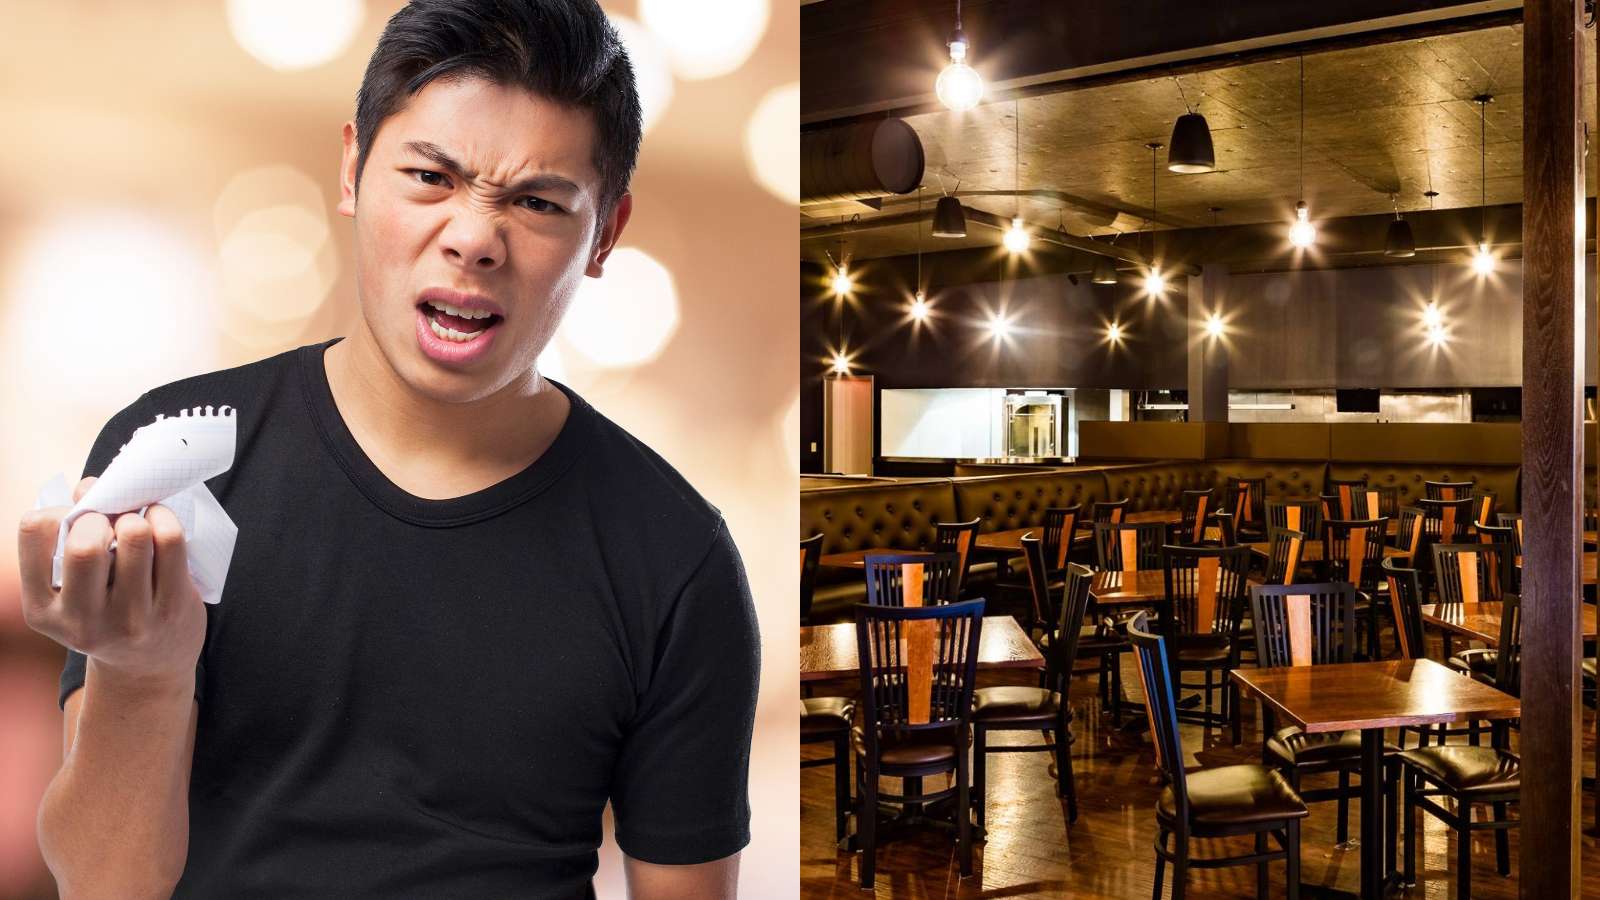 customer angry at restaurant bill